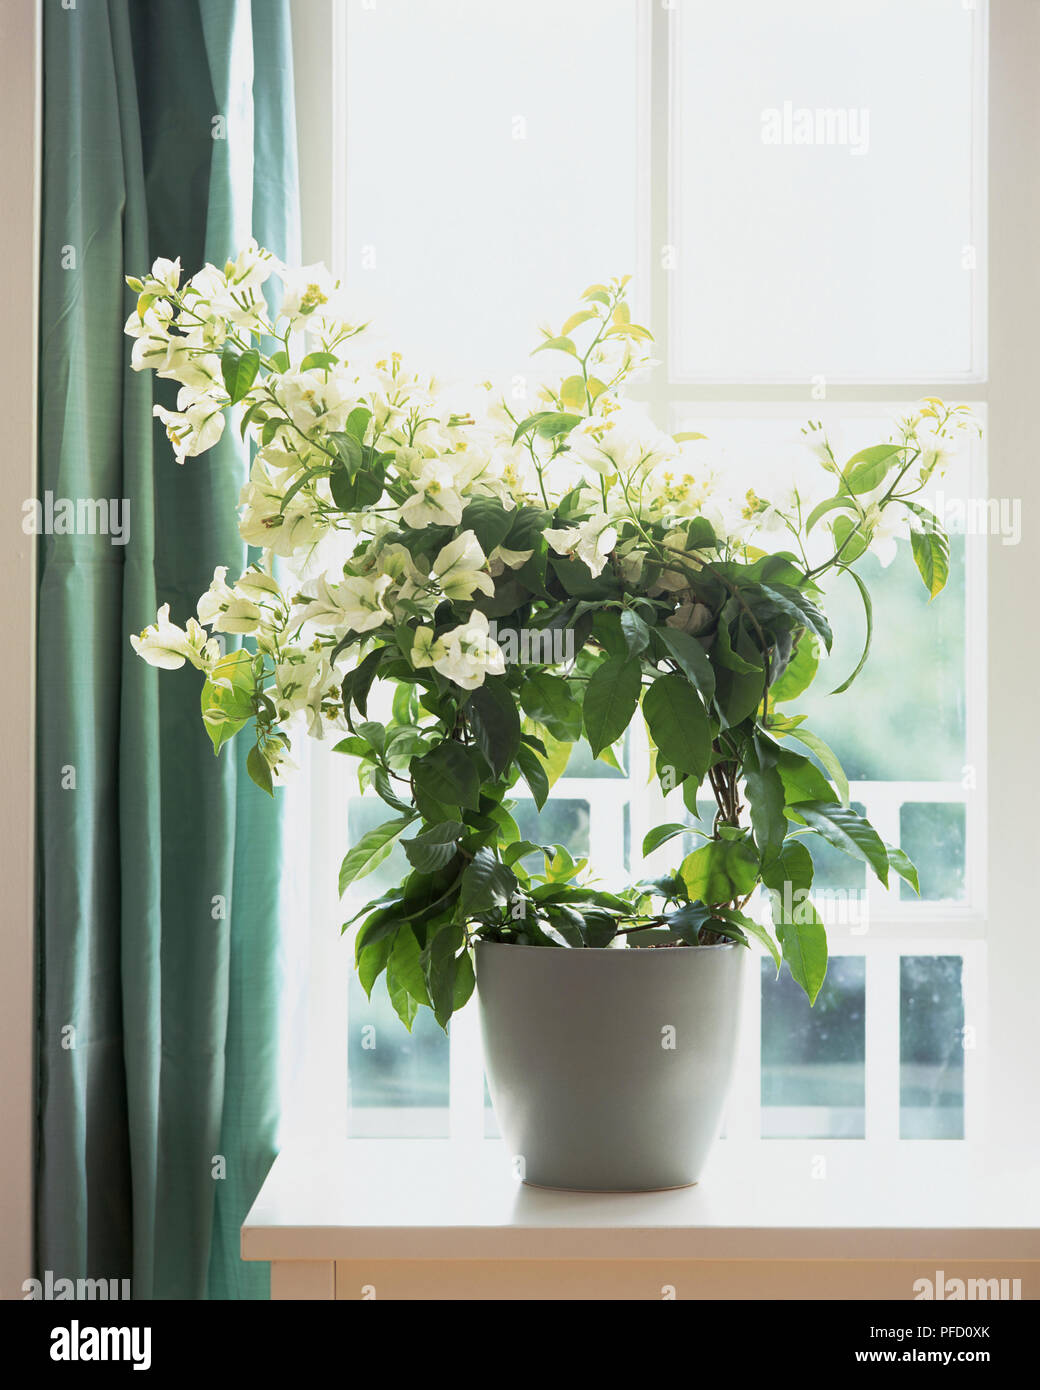 Pianta con foglie verdi, cresciuto intorno al telaio circolare, fiori di colore bianco che scaturisce da steli in alto, bianco vaso sul davanzale della finestra Foto Stock